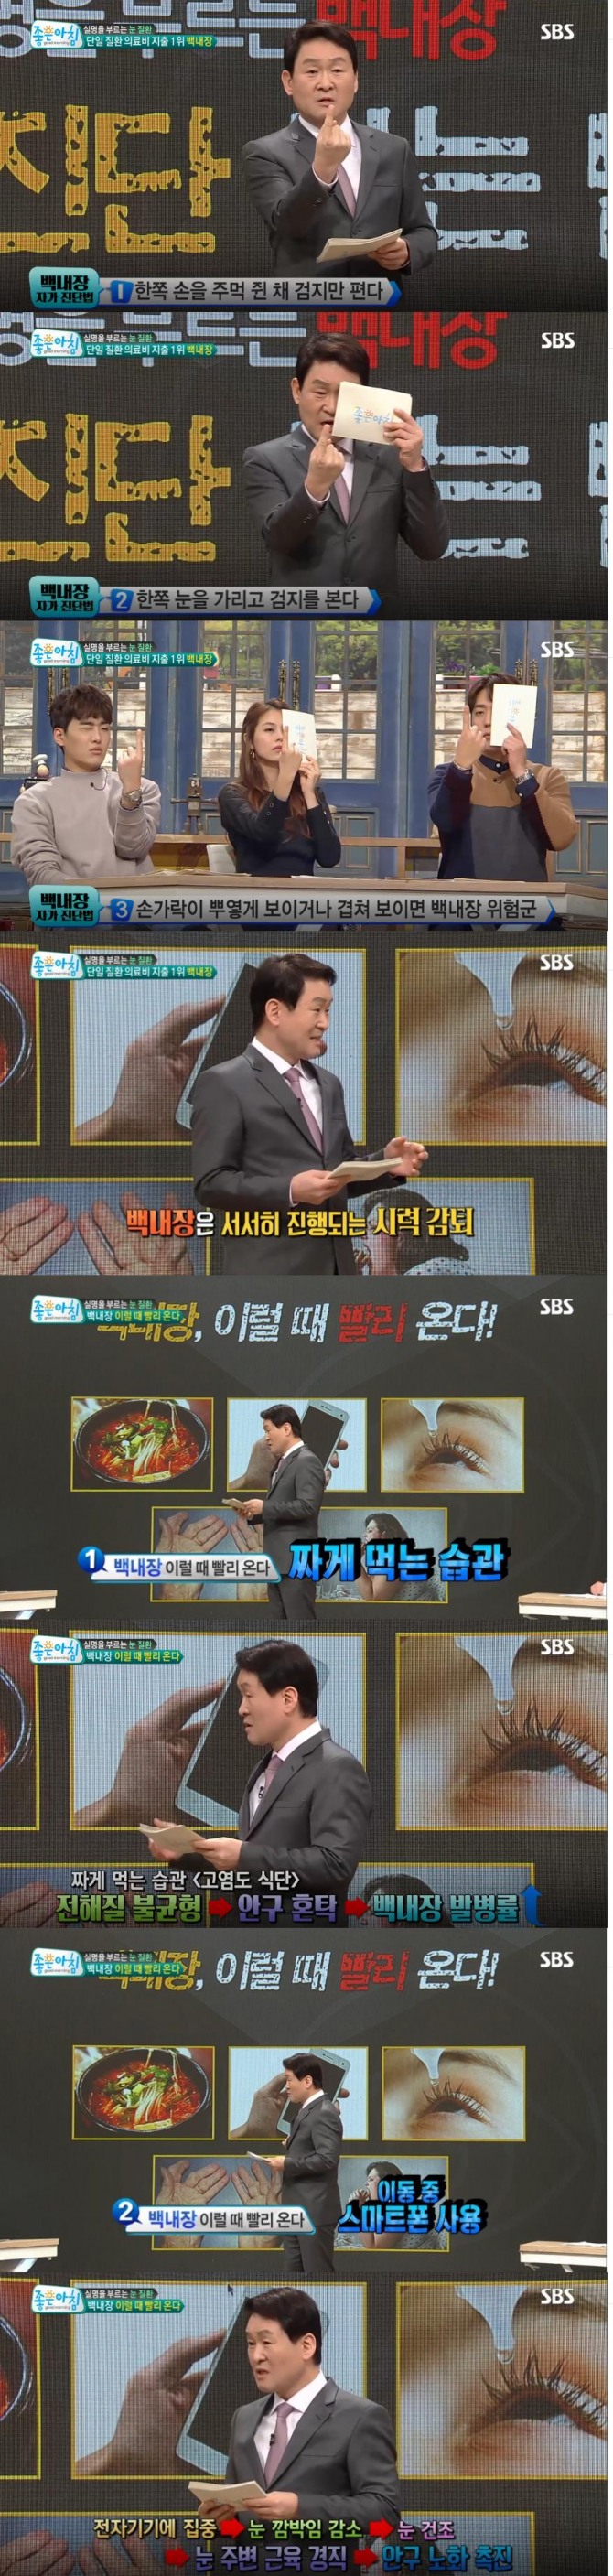 12일 방송된 SBS '좋은 아침' 건강백서에는 눈 건강 특집으로 실명을 부르는 눈질환! '백내장 자가진단법'이 소개됐다./사진=SBS 방송 캡처 